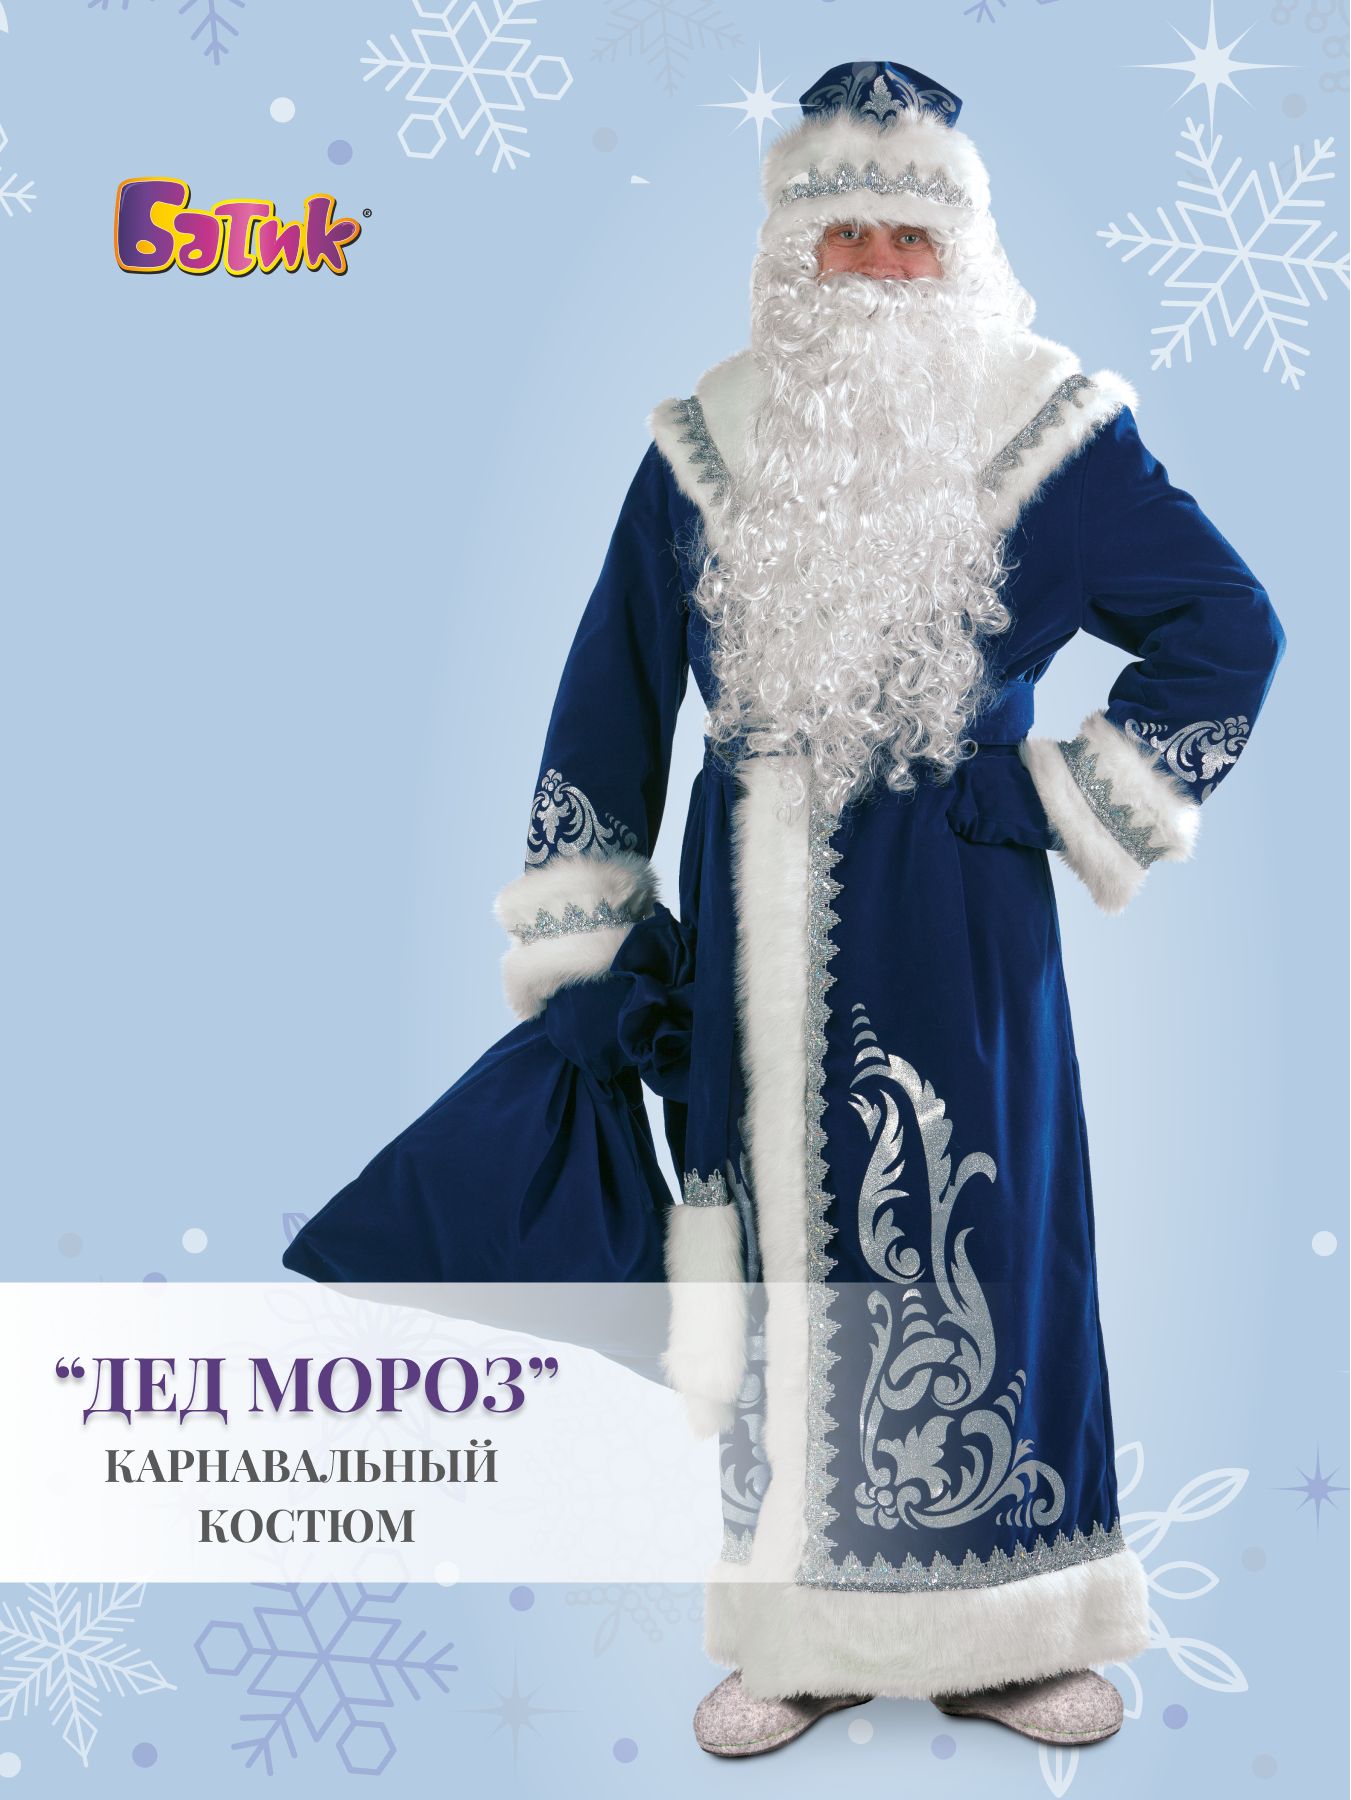 Купить костюмы Деда Мороза и Снегурочки - Esta-costume